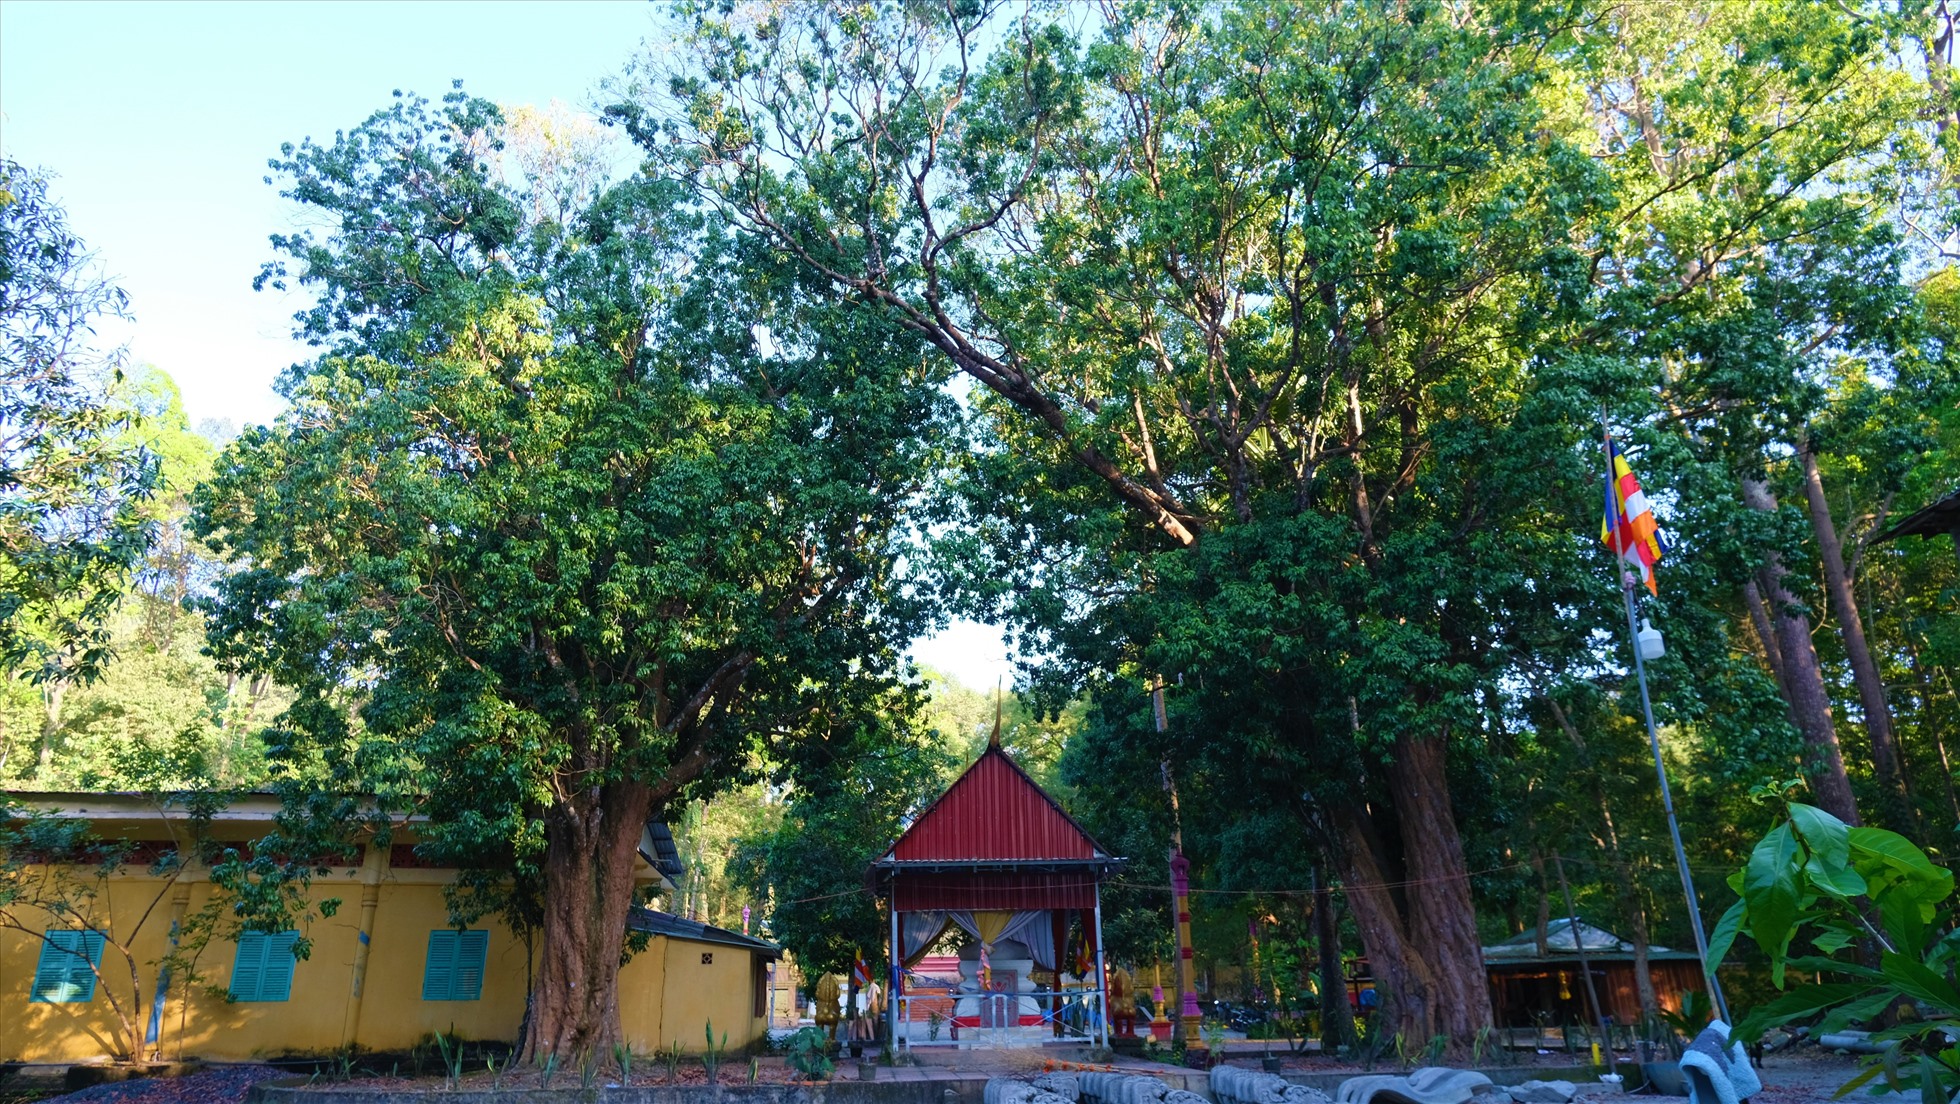 Dù không phải là xứ sở trồng vải thiều nhưng tại vùng núi An Giang lại có cặp cây cổ thụ hơn 300 năm tuổi. Loài cây này được người dân địa phương xem là bảo vật.